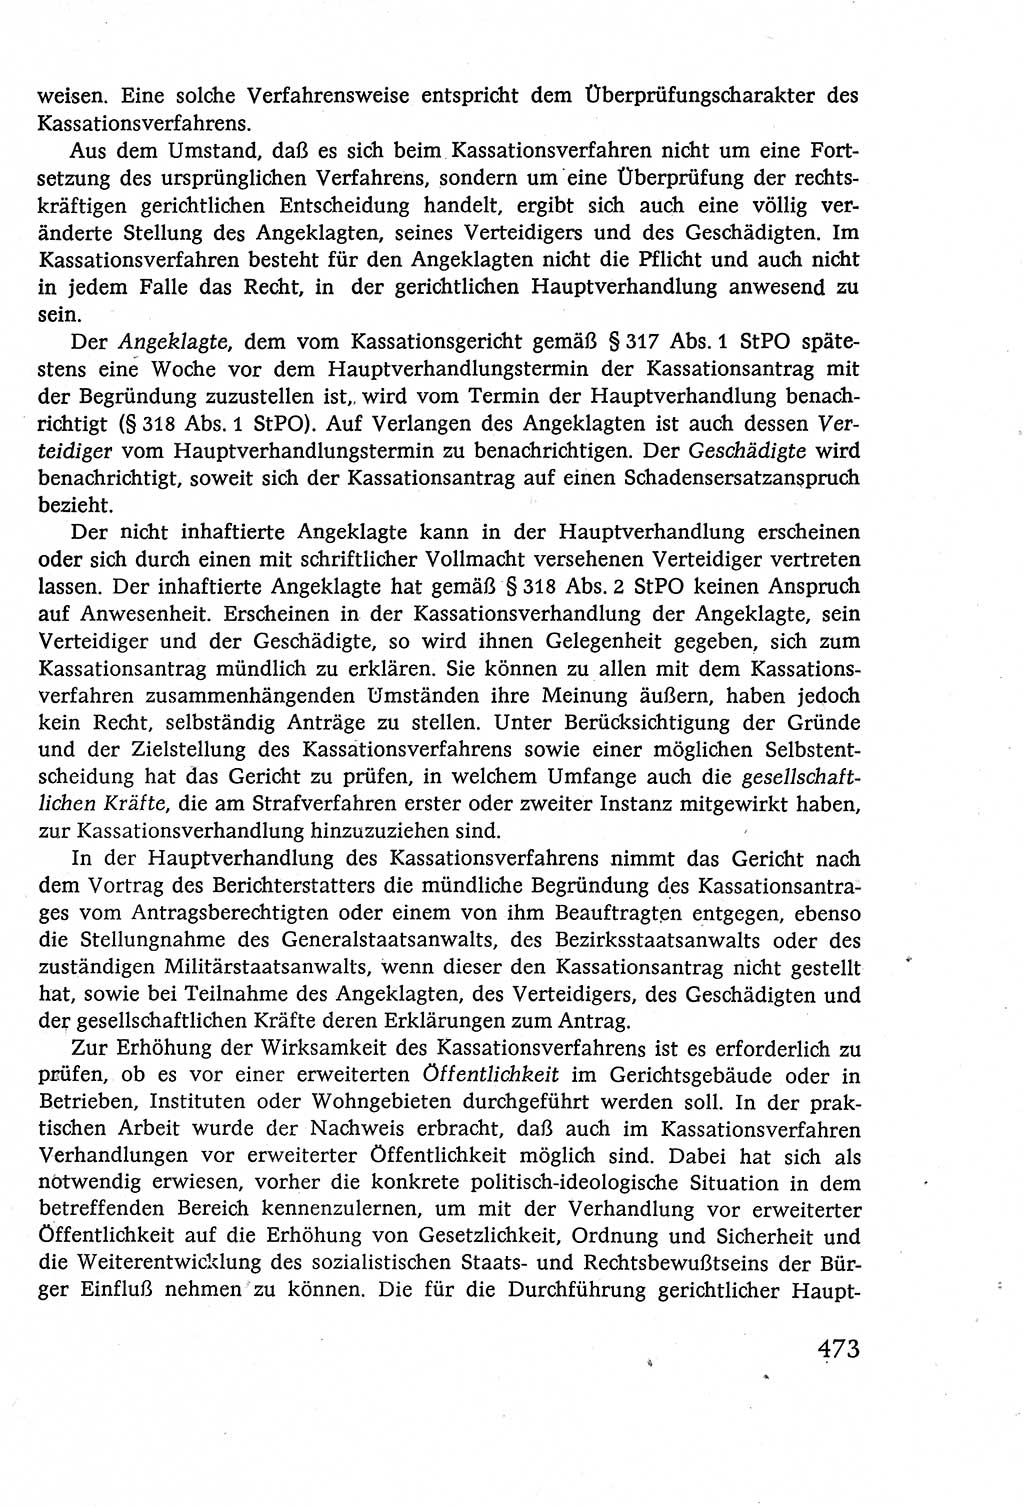 Strafverfahrensrecht [Deutsche Demokratische Republik (DDR)], Lehrbuch 1977, Seite 473 (Strafverf.-R. DDR Lb. 1977, S. 473)